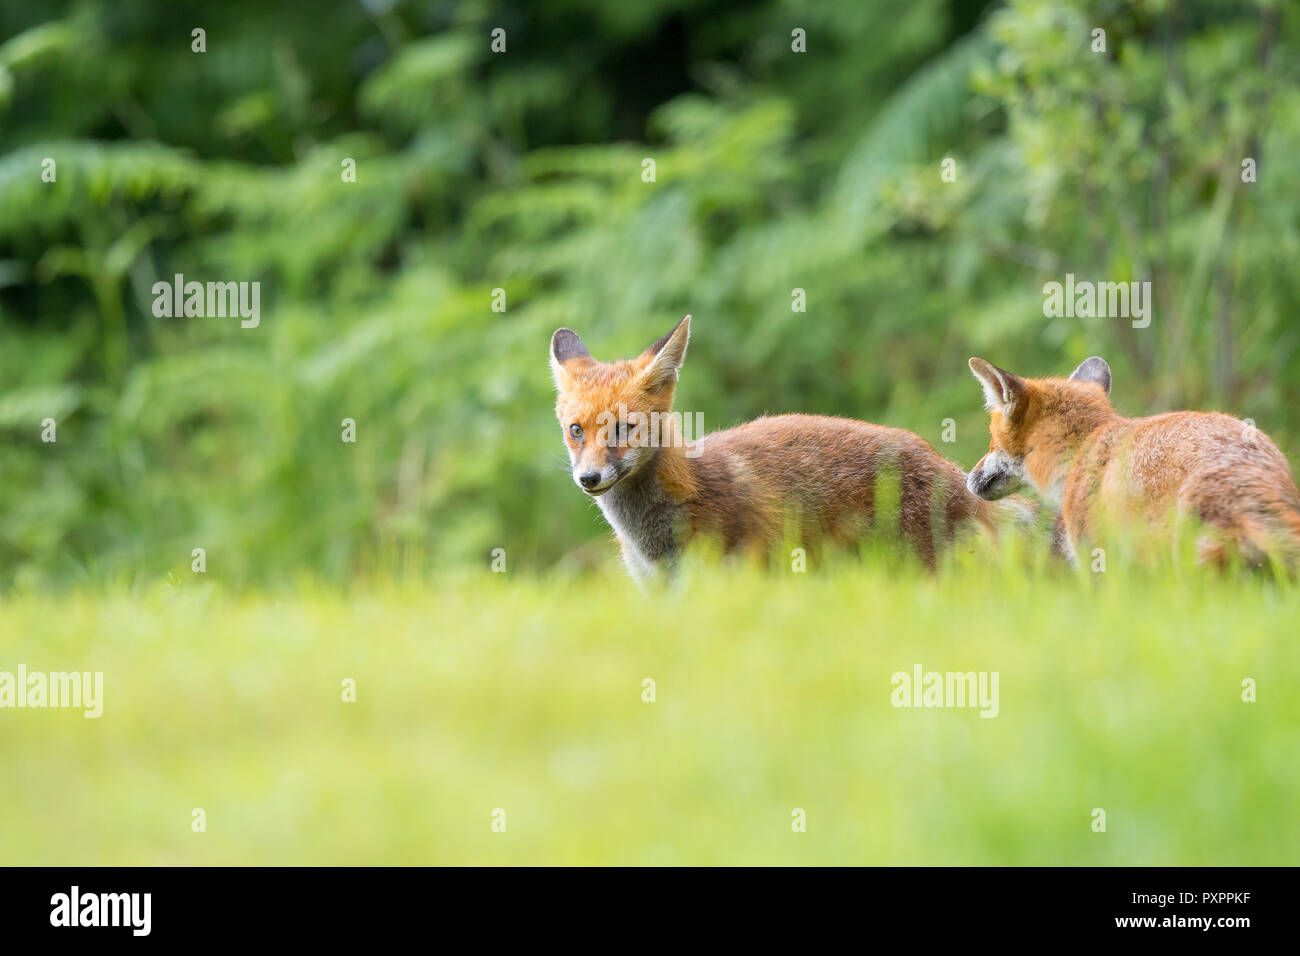 Vista ad angolo basso di due giovani volpi rosse del Regno Unito (Vulpes vulpes) nella campagna estiva, in piedi isolati in erba, dall'aspetto allarmante e divertente. Animali volpe. Foto Stock